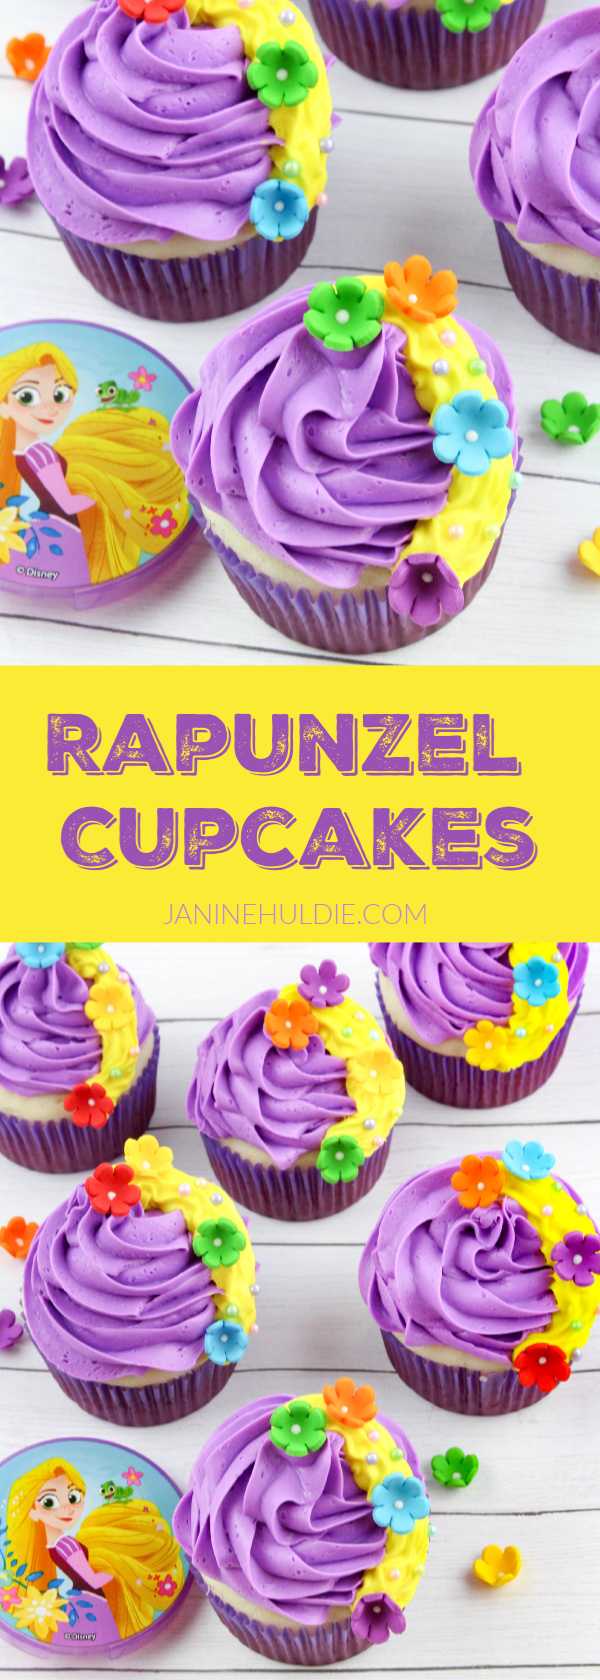 Rapunzel Cupcakes Recipe